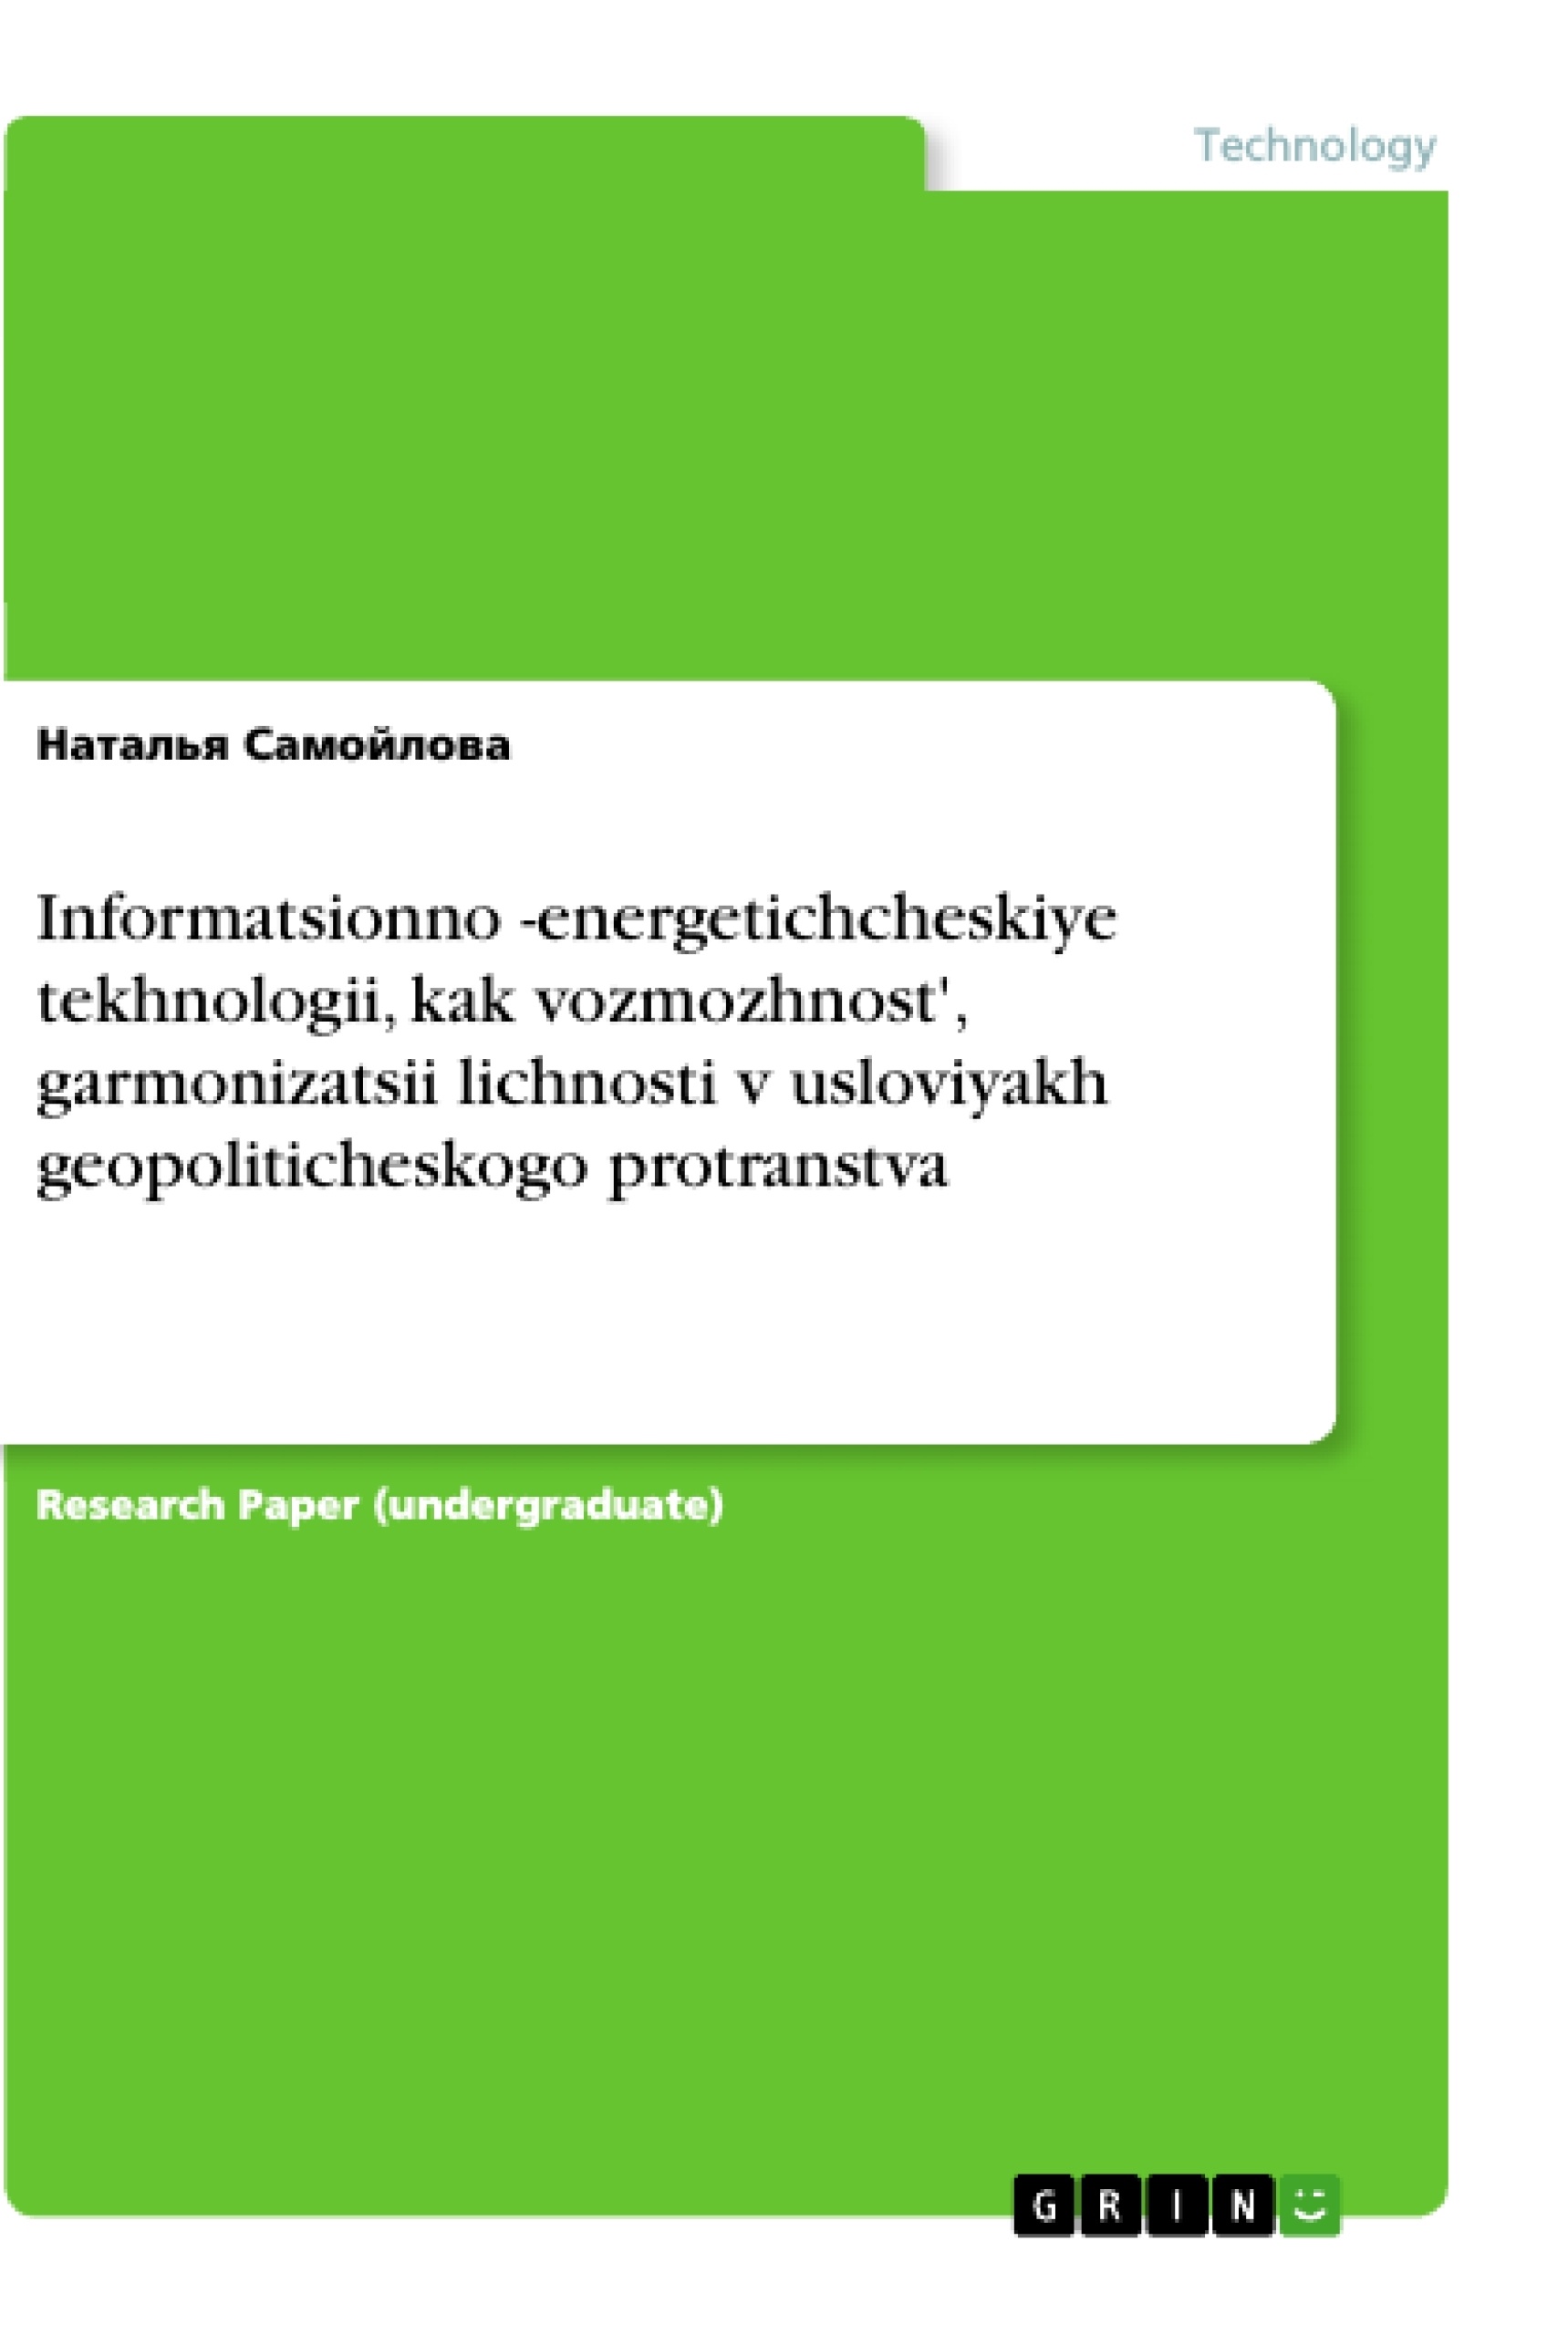 Título: Informatsionno -energetichcheskiye tekhnologii, kak vozmozhnost', garmonizatsii lichnosti v usloviyakh geopoliticheskogo protranstva